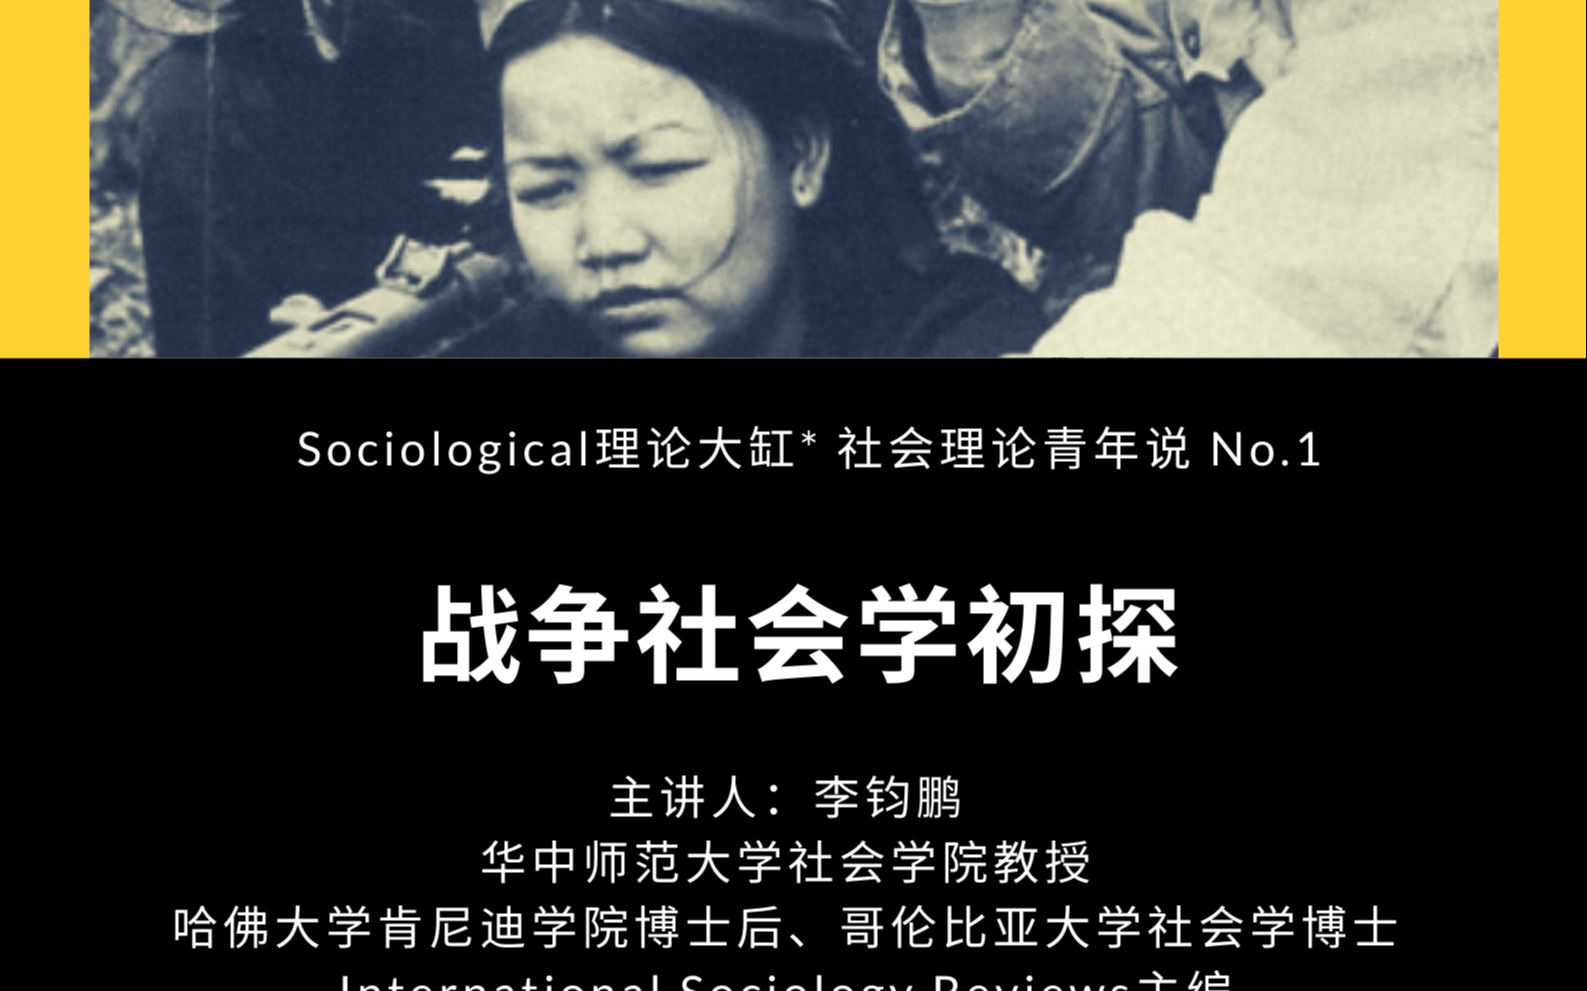 李钧鹏-战争社会学初探-社会理论青年说第1讲_哔哩哔哩_bilibili